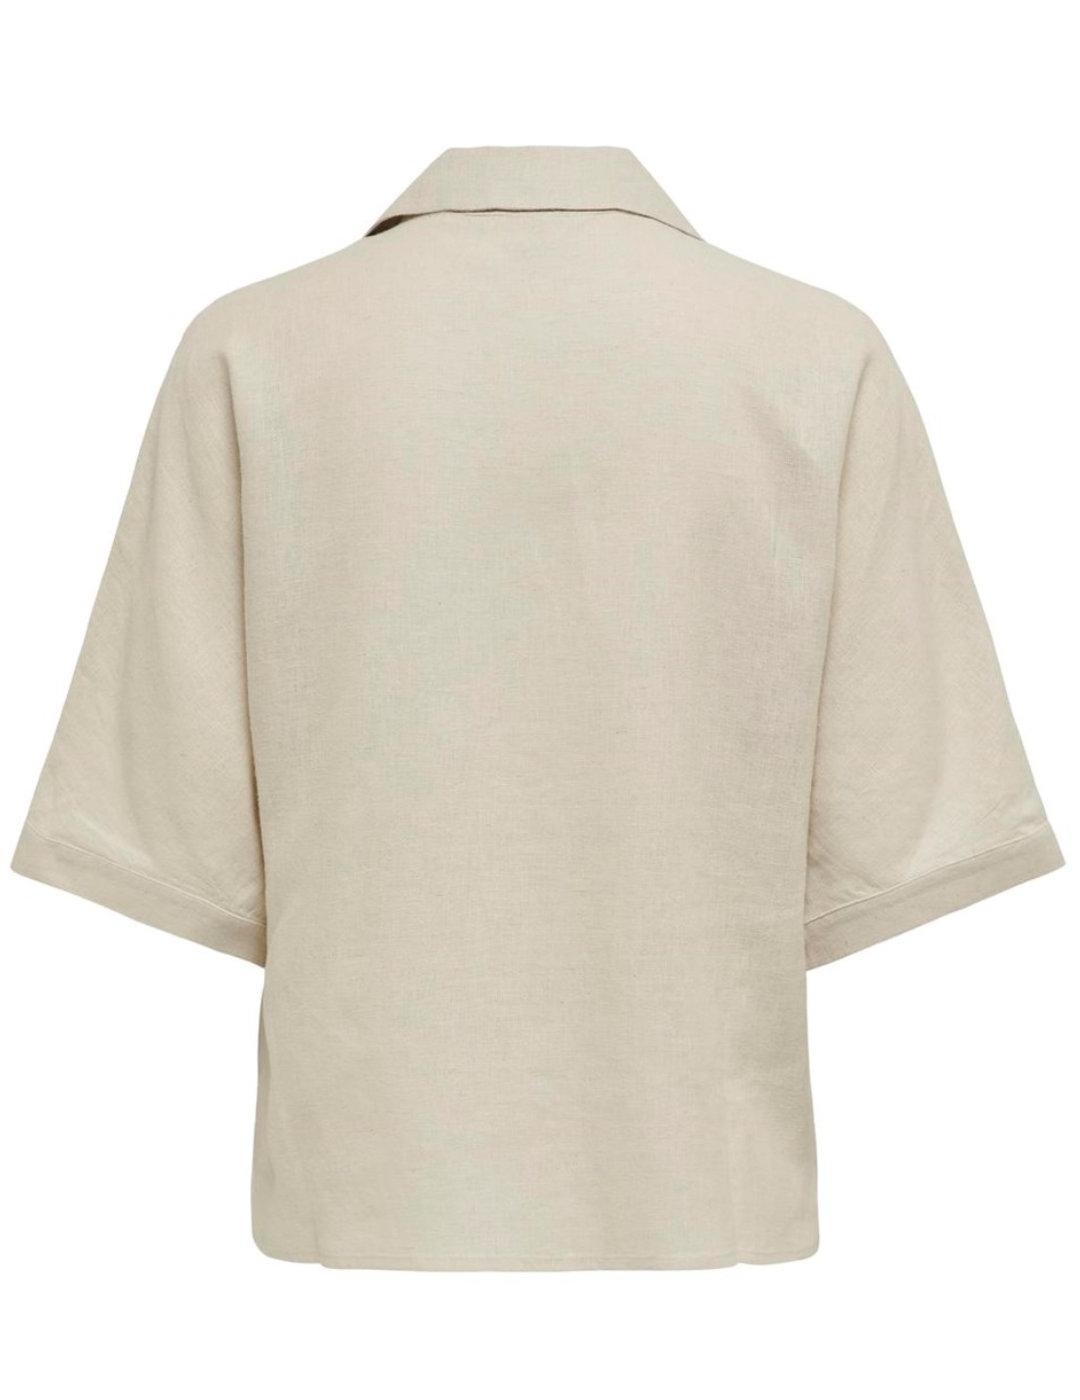 Camisa Only Tokyo beige de lino hombros caídos para mujer